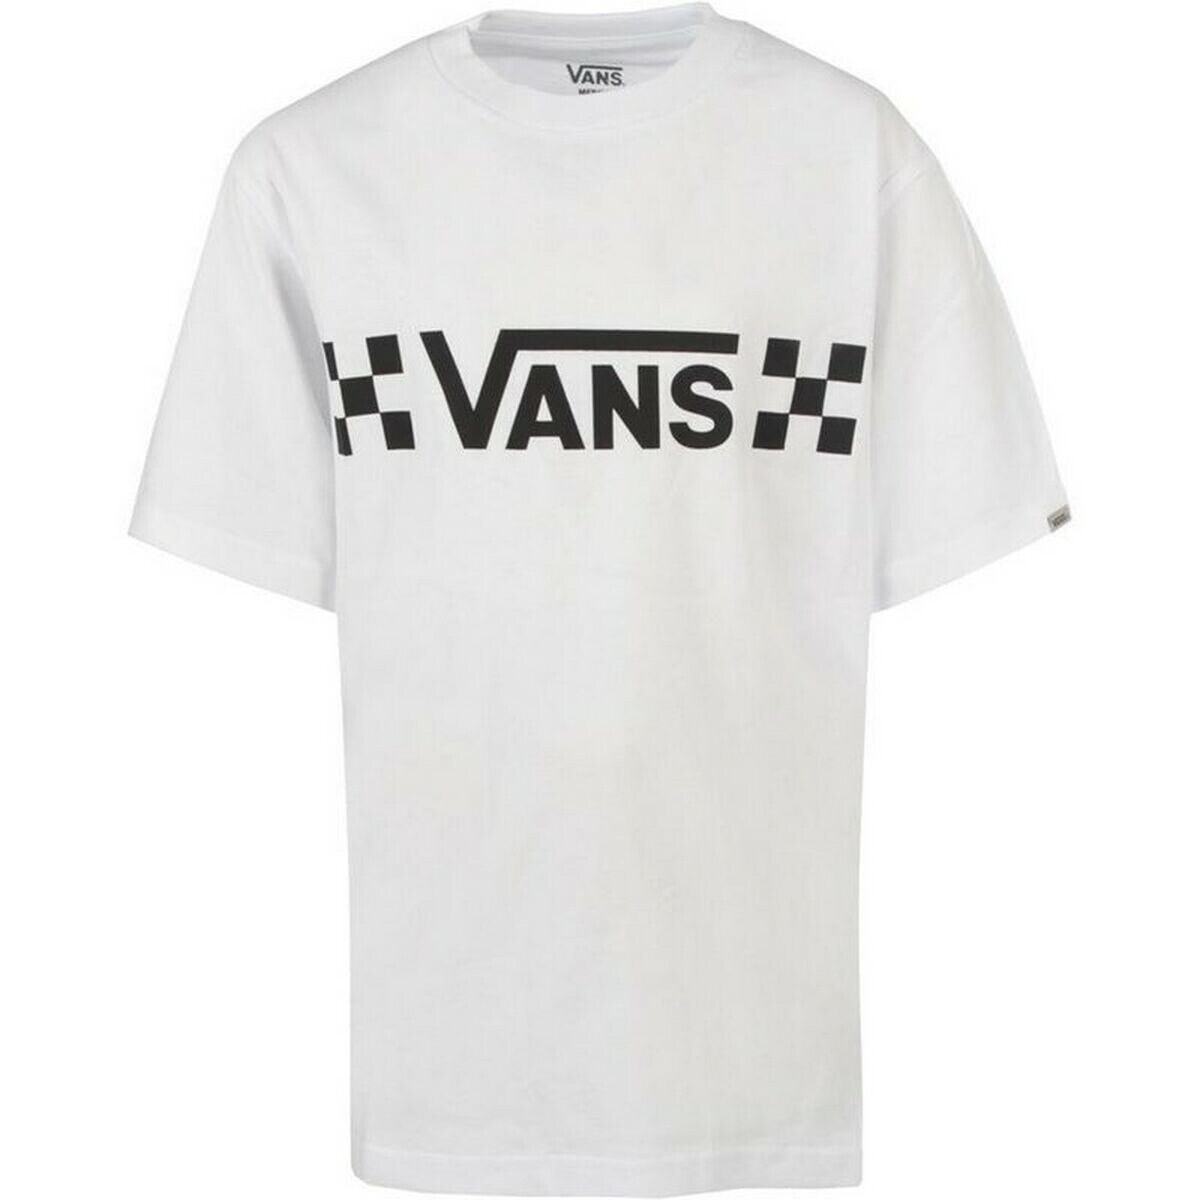 Children’s Short Sleeve T-Shirt Vans V Che-B White